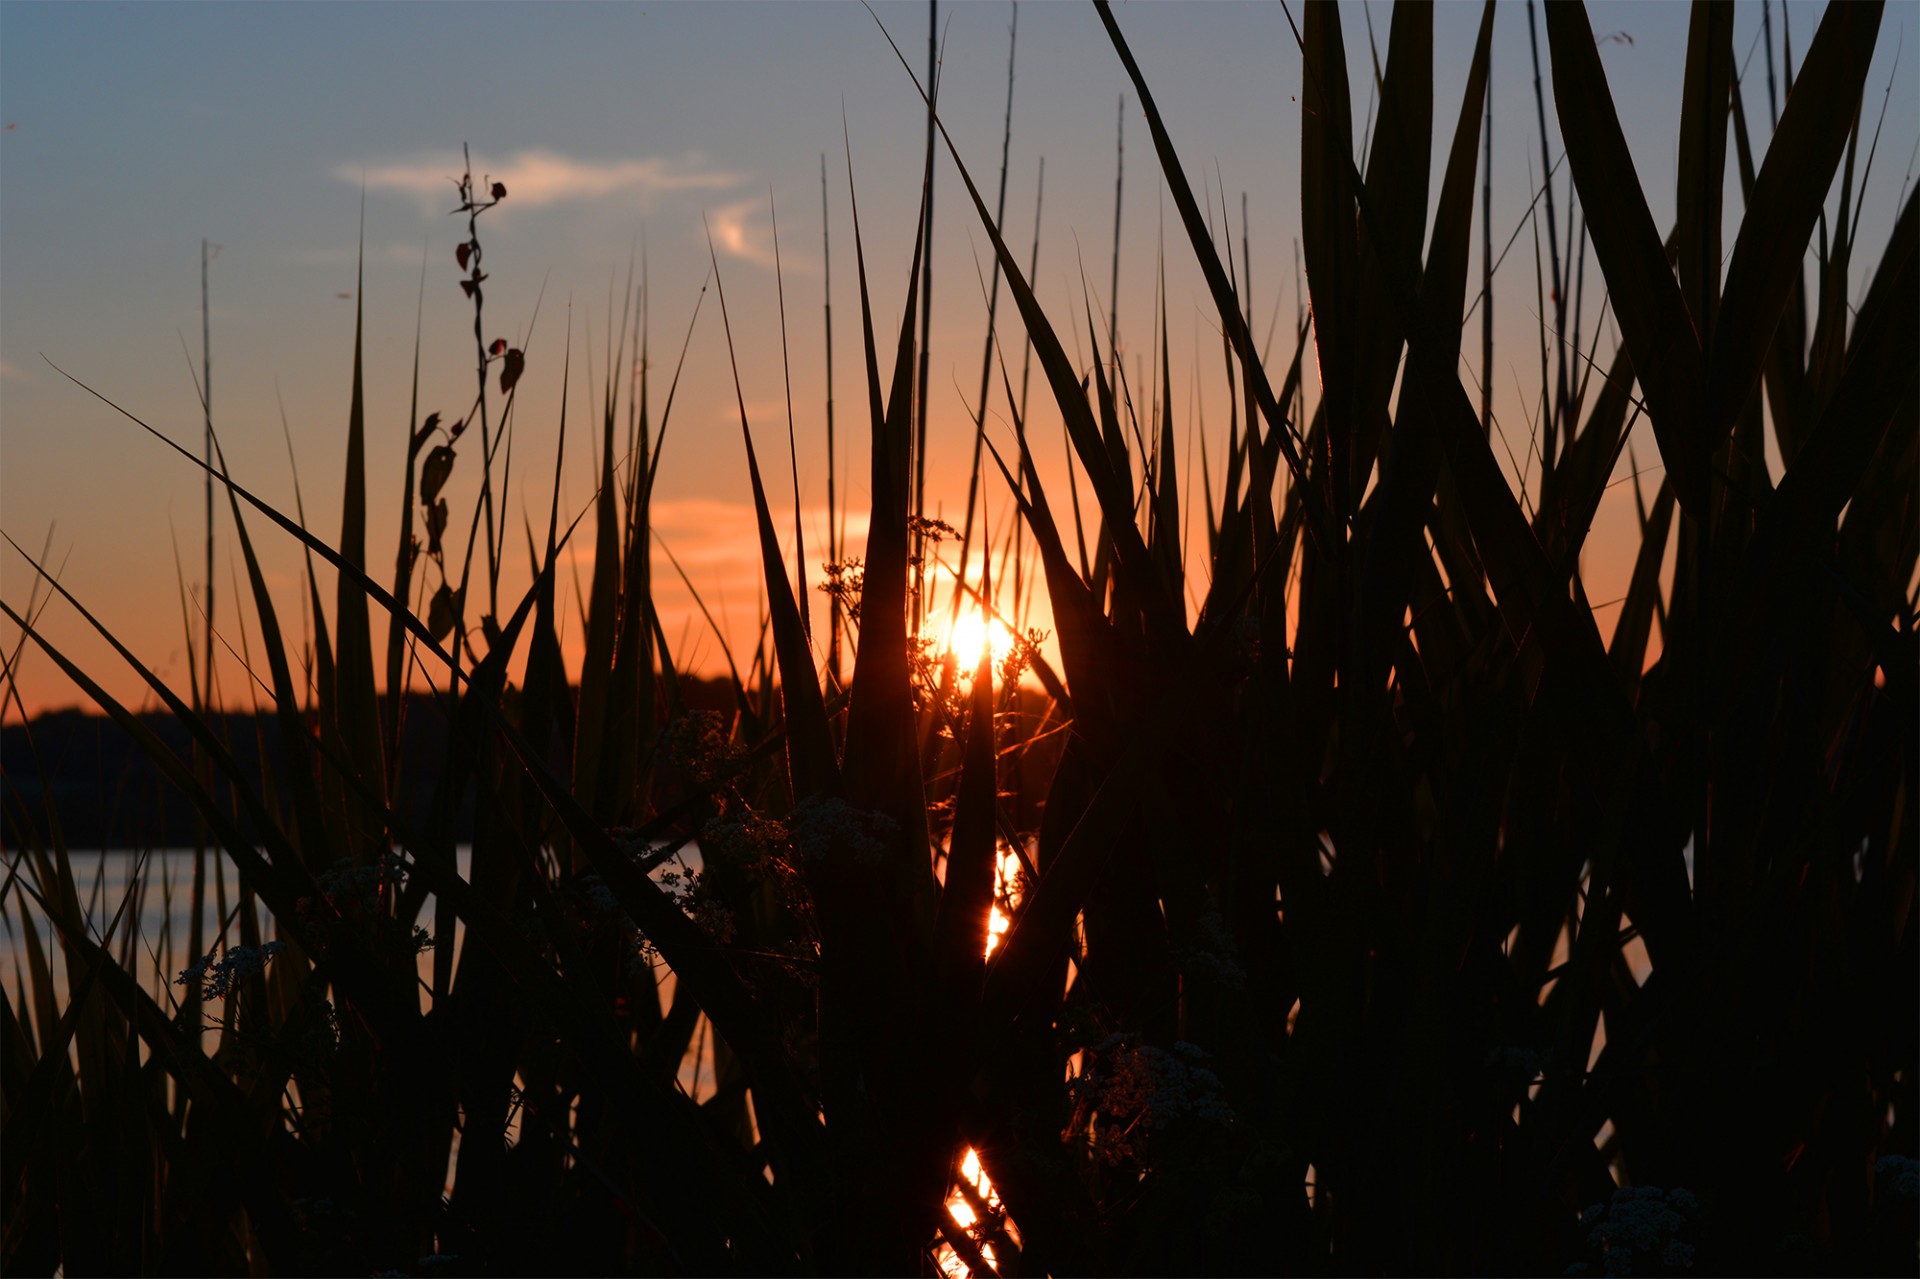 grass lake sunset free photo